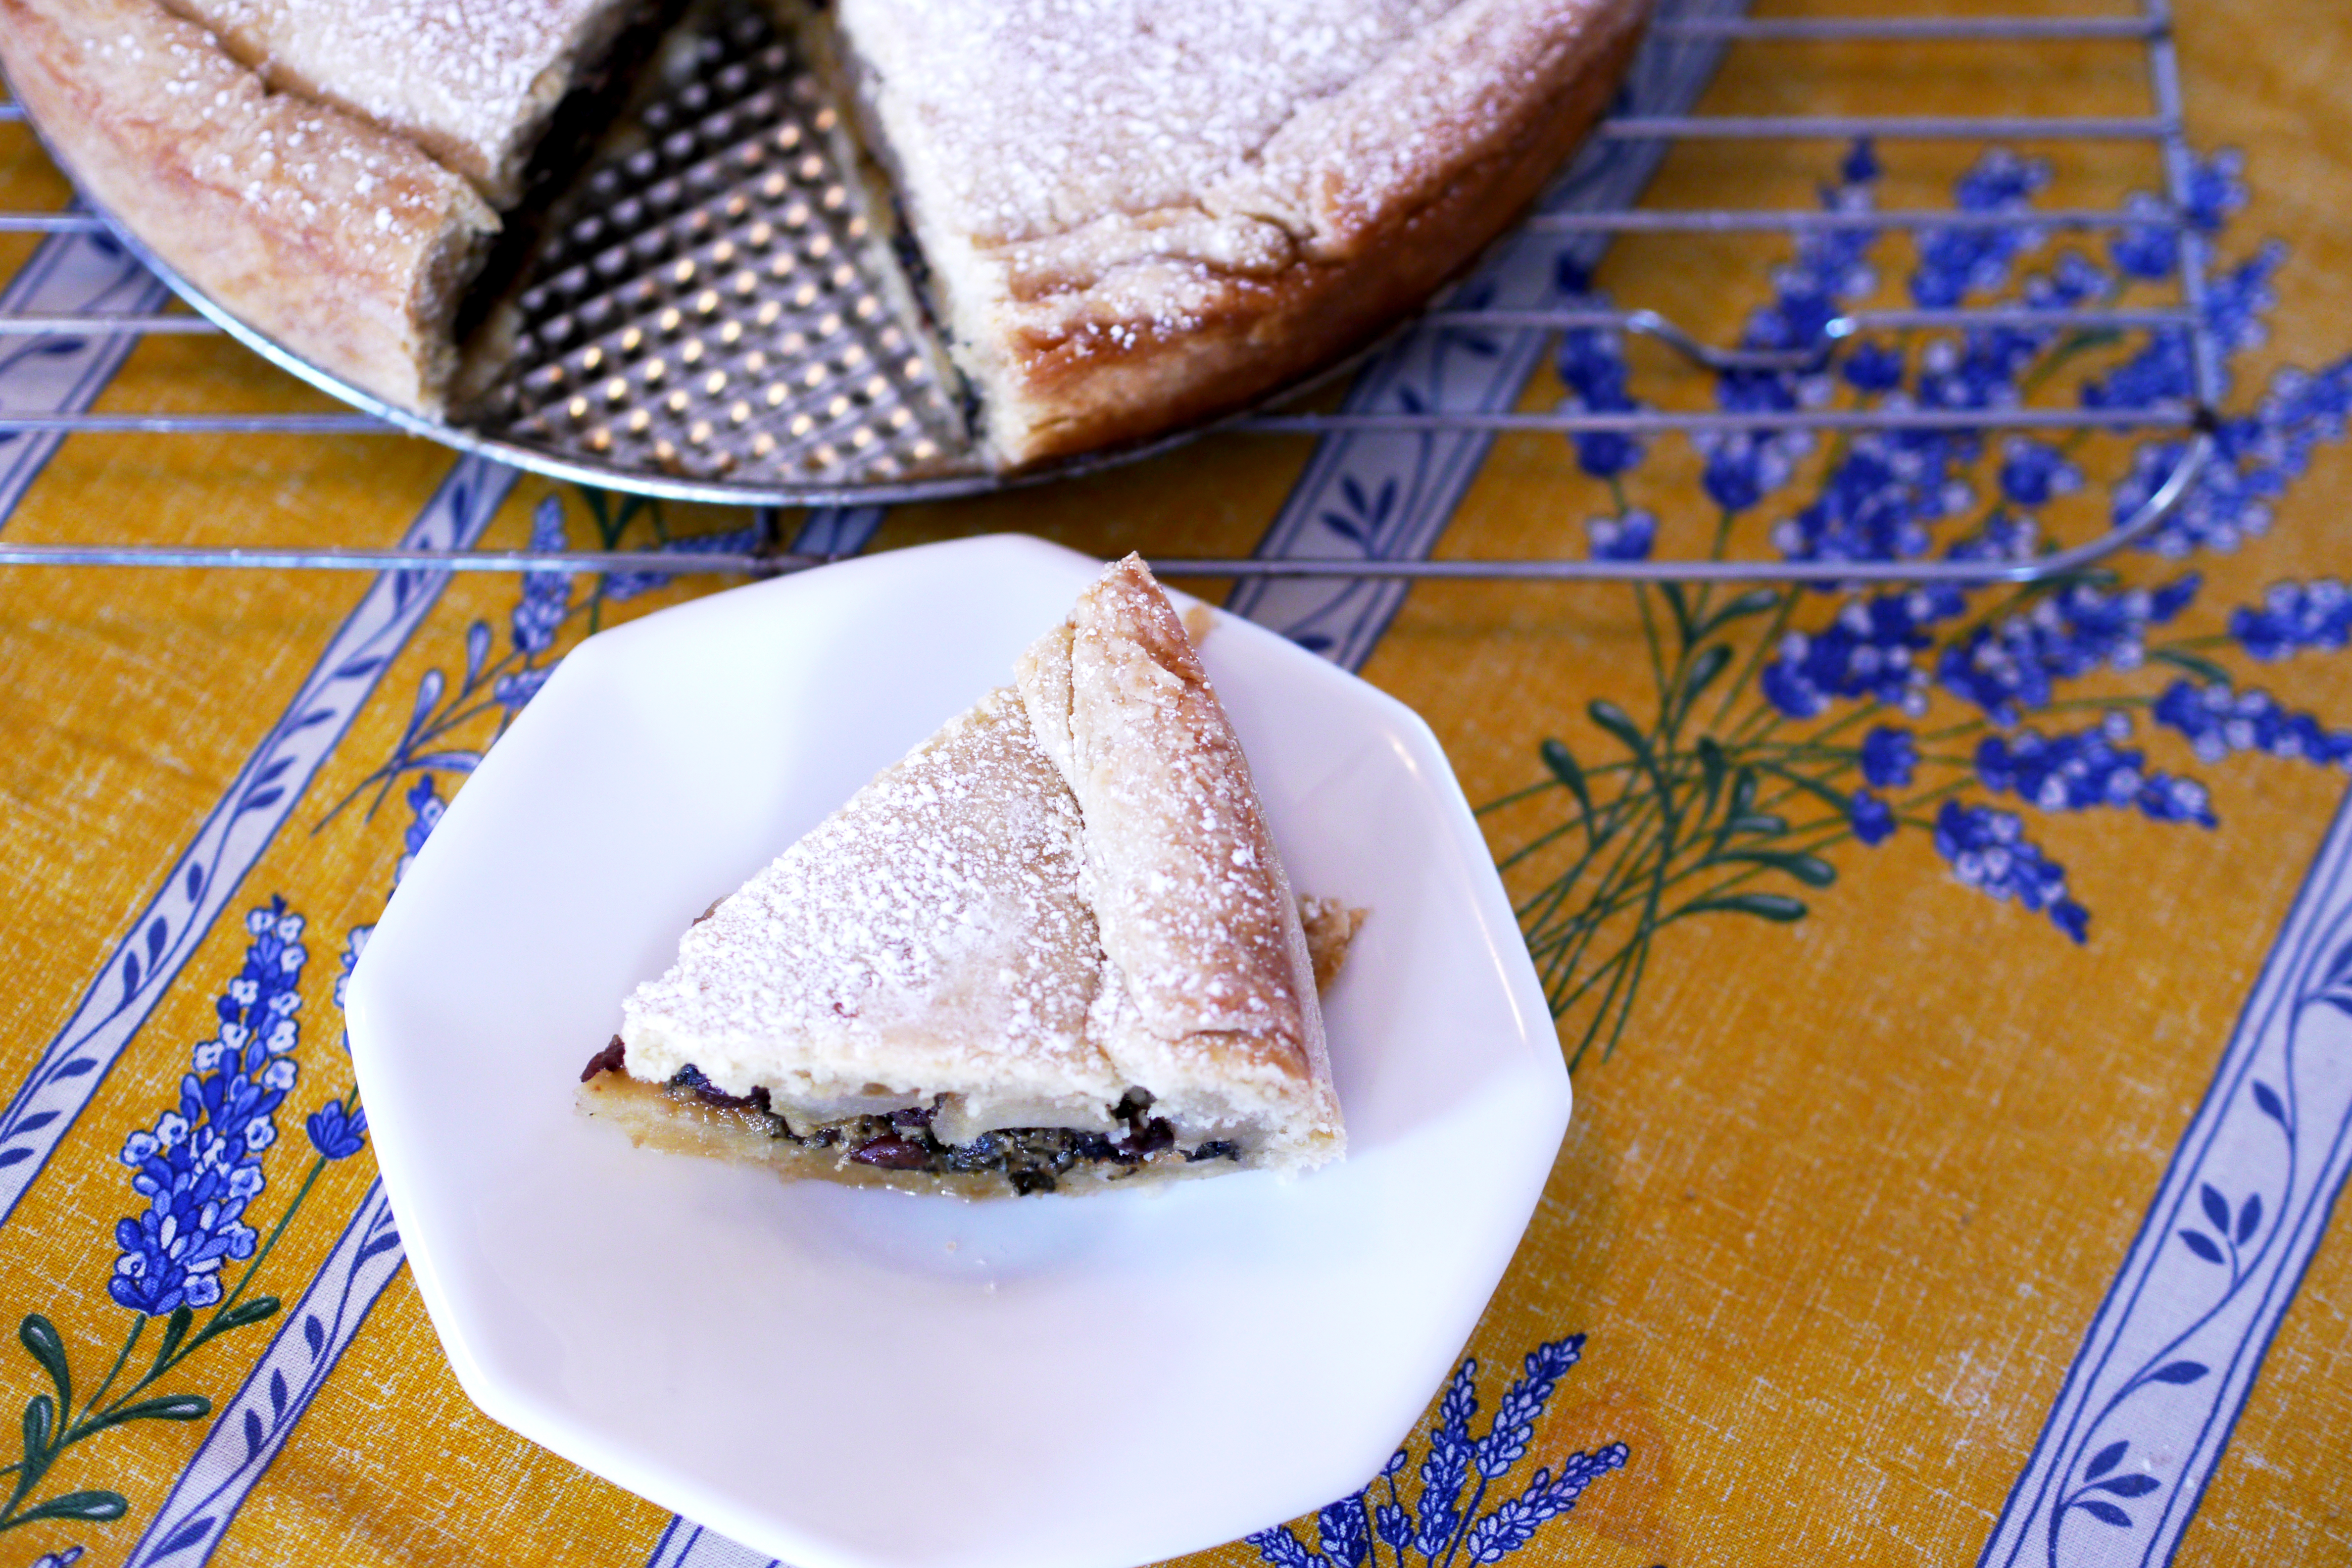 La Tourte de Blettes: A Pie for Dinner or Dessert